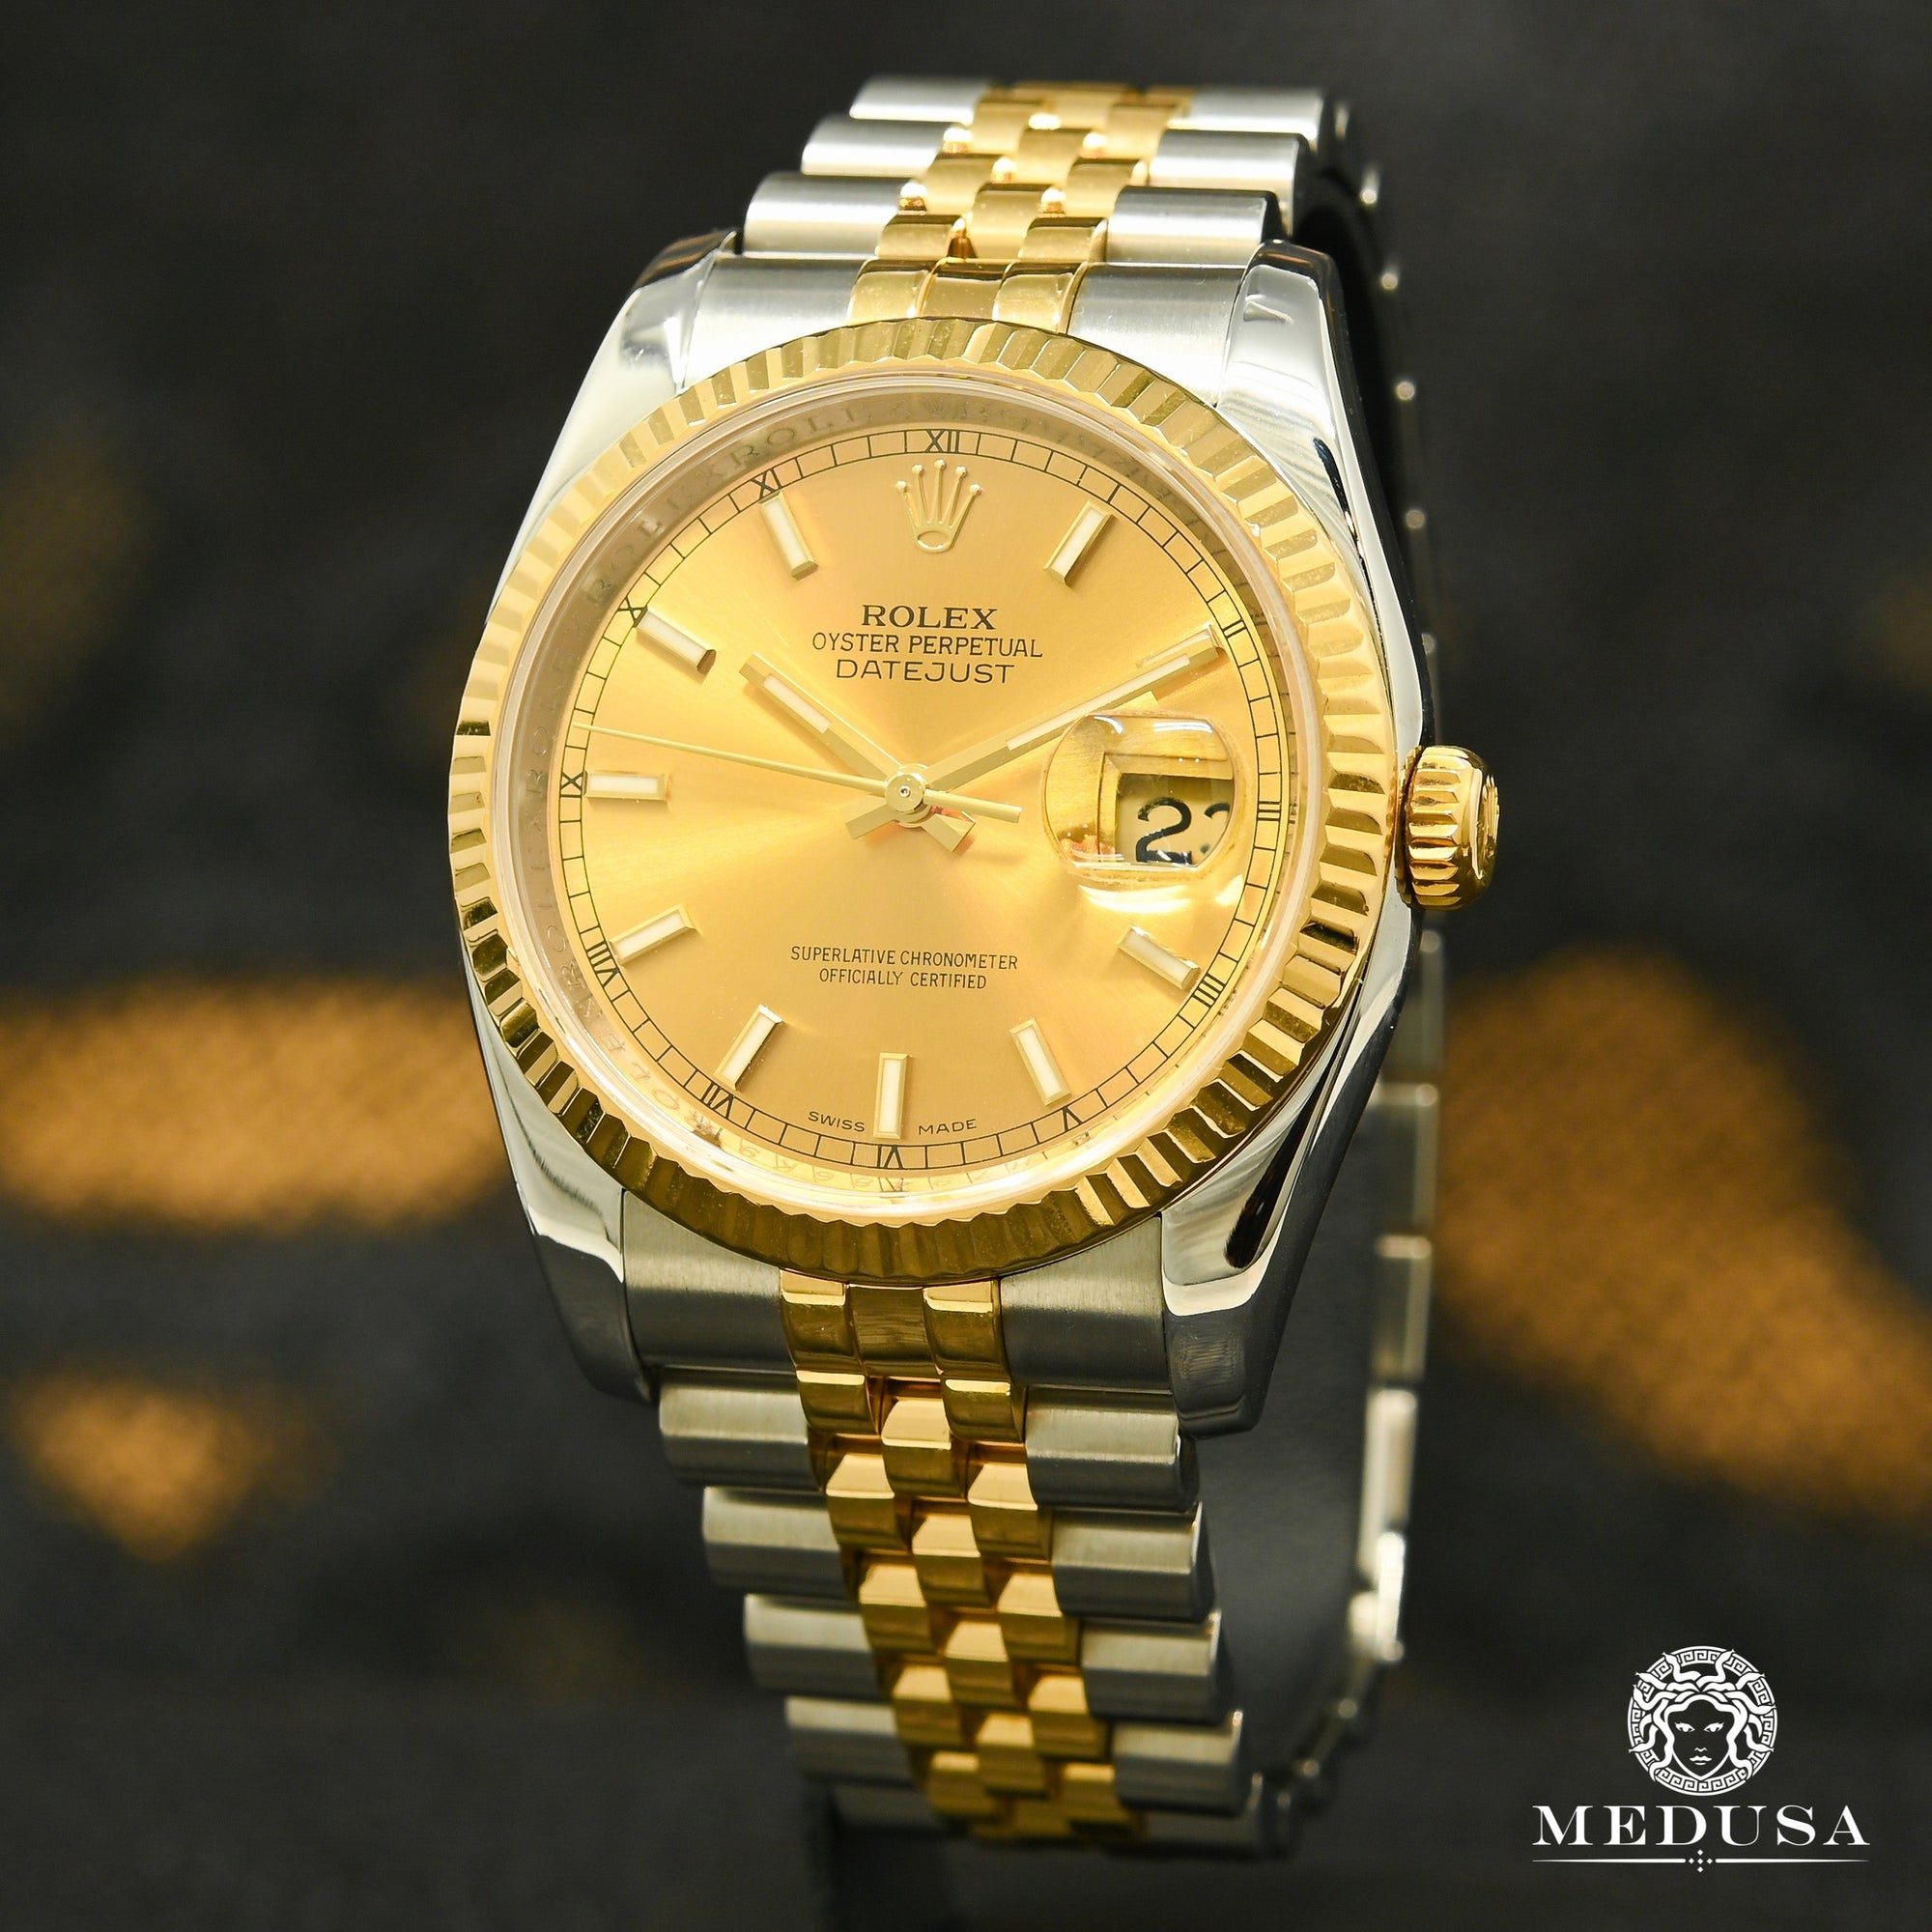 Rolex watch | Rolex Datejust Men's Watch 36mm - Modern Champagne Stick Gold 2 Tones